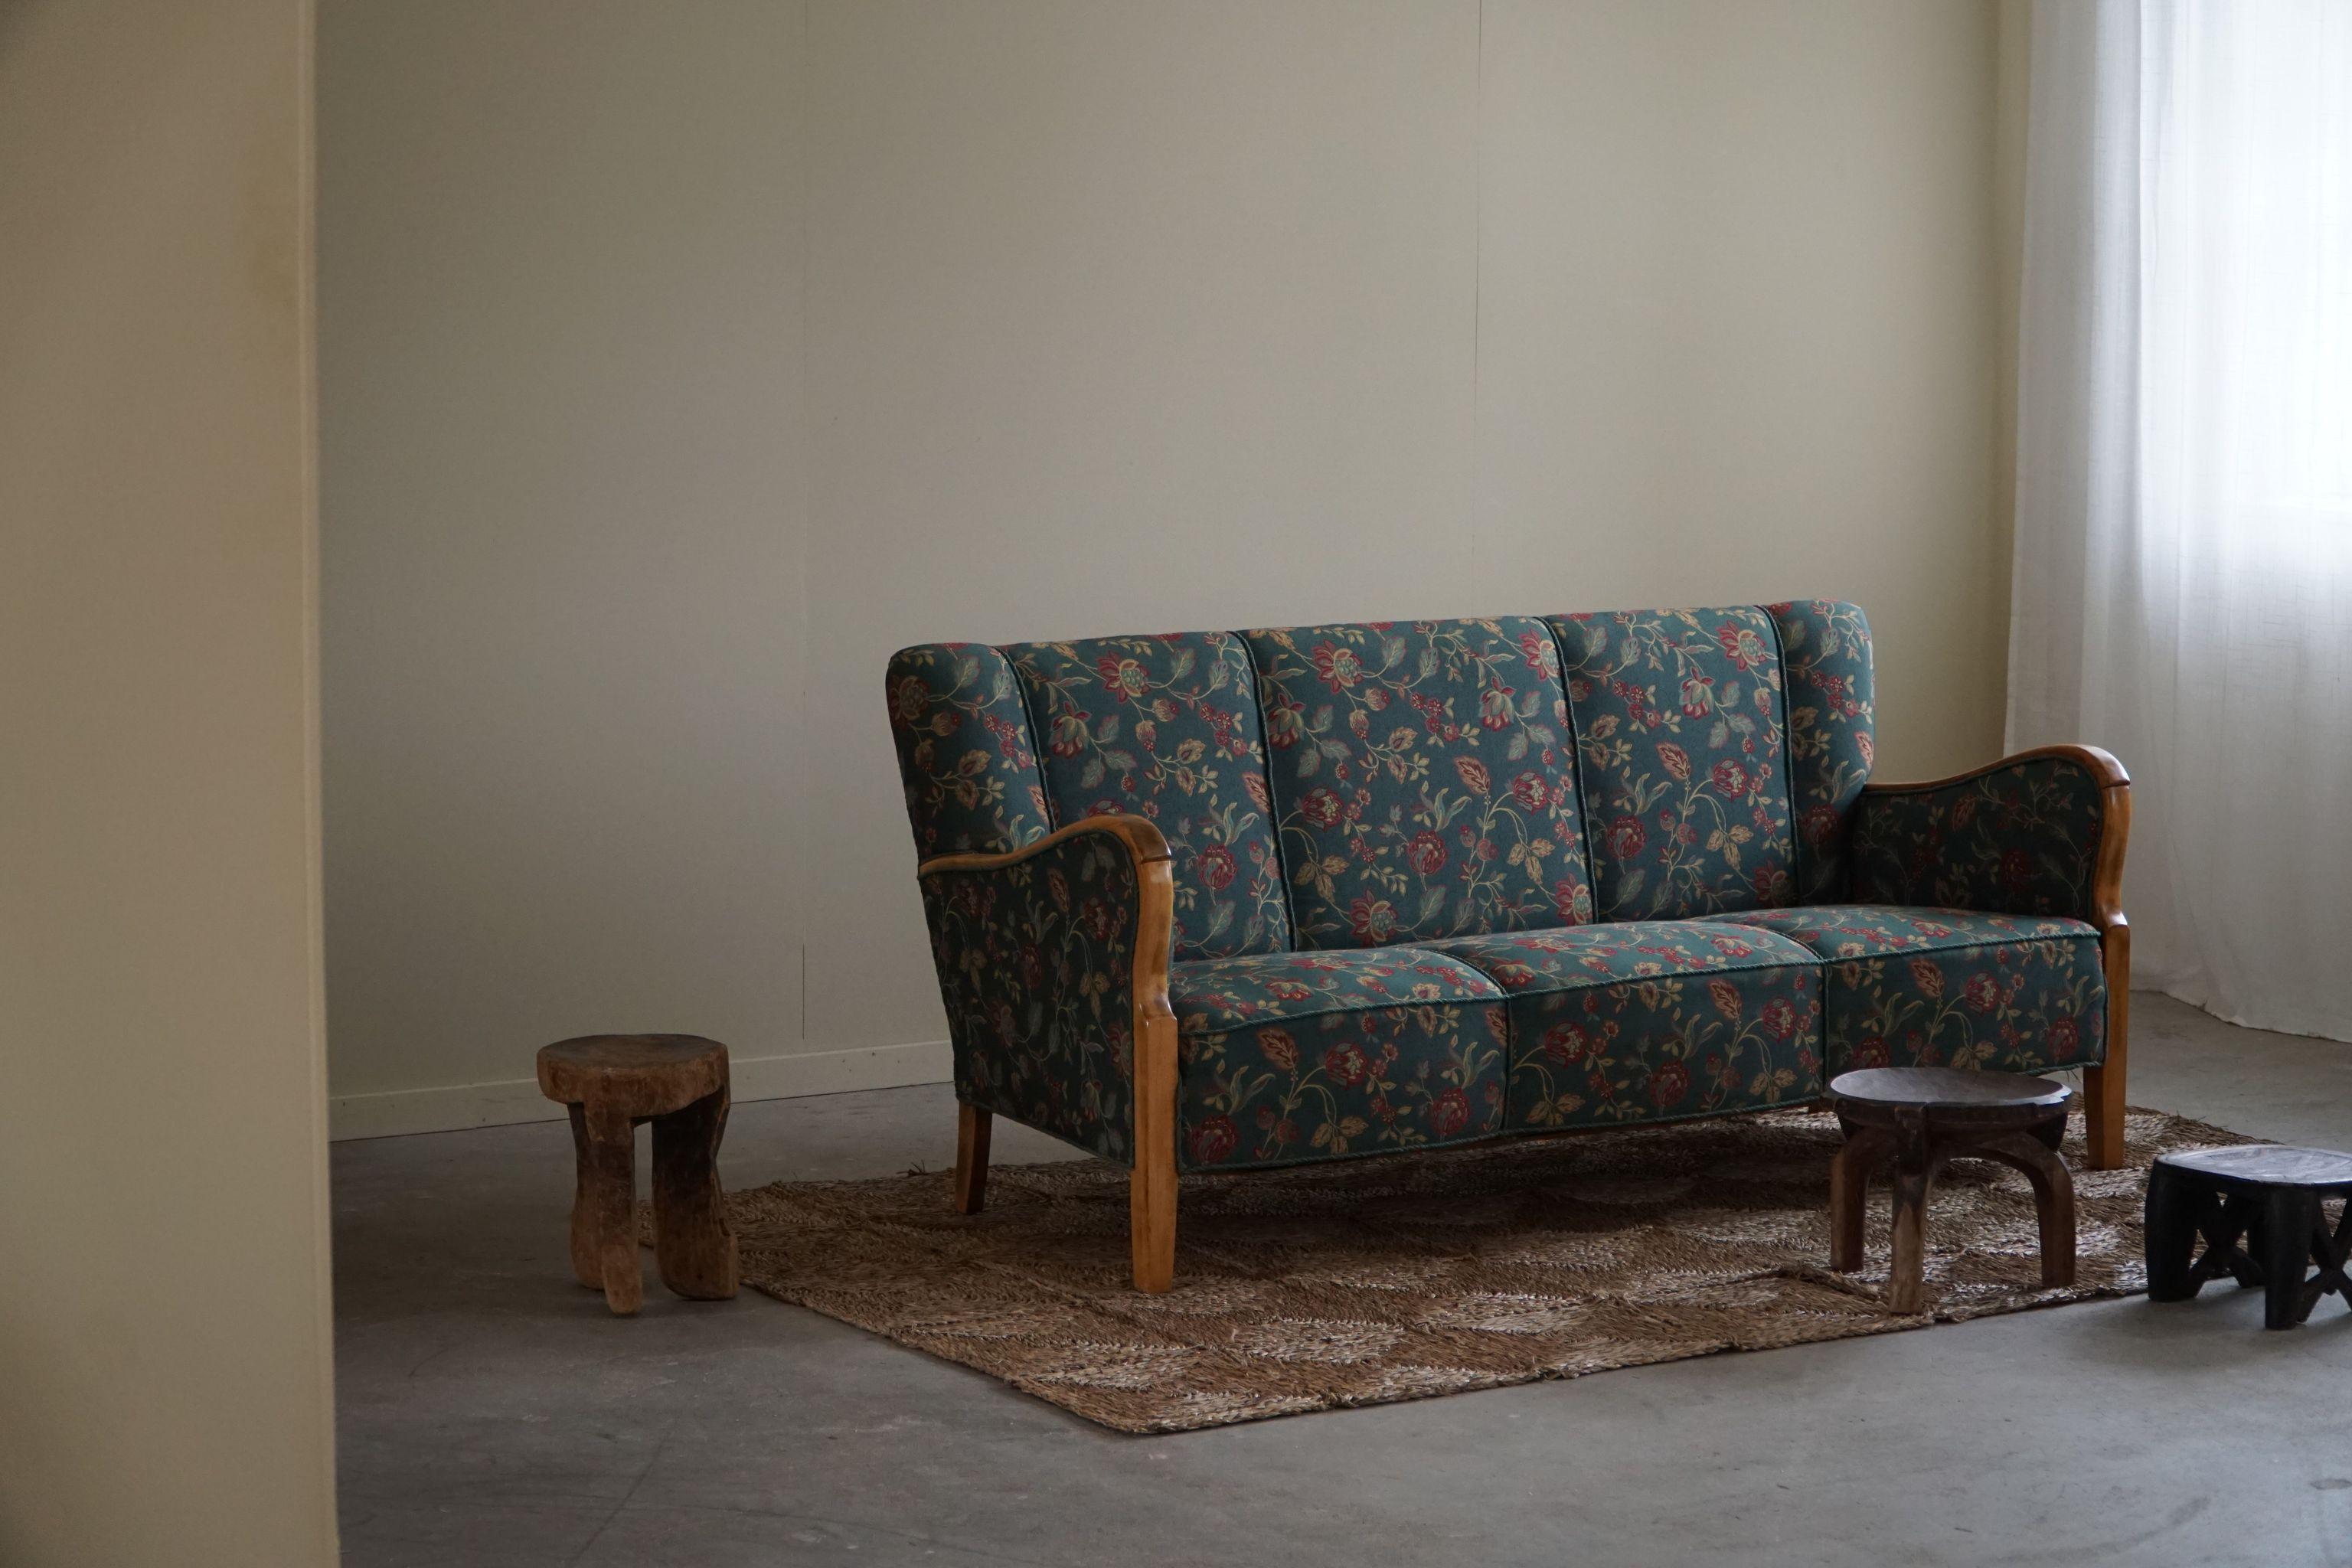 Un canapé trois places danois moderne et intemporel en hêtre et en tissu fleuri coloré original. Fabriqué par un ébéniste danois dans les années 1960.

Ce canapé exquis incarne l'essence du design danois, combinant des lignes épurées, des formes